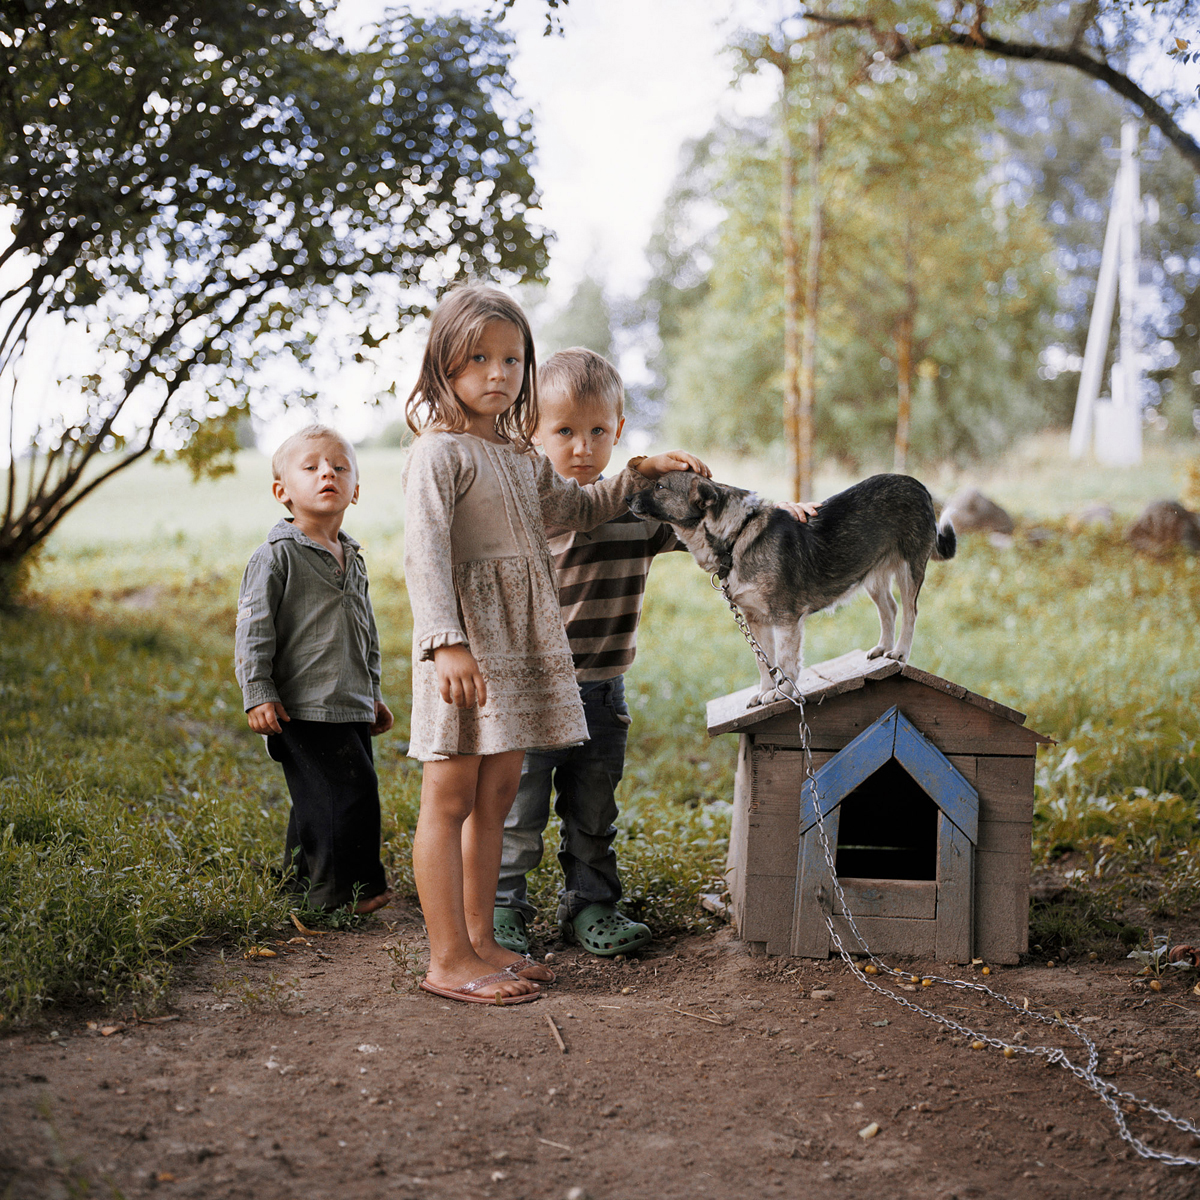 Kazakevicius_Tadas_Countryside children with their beloved dog